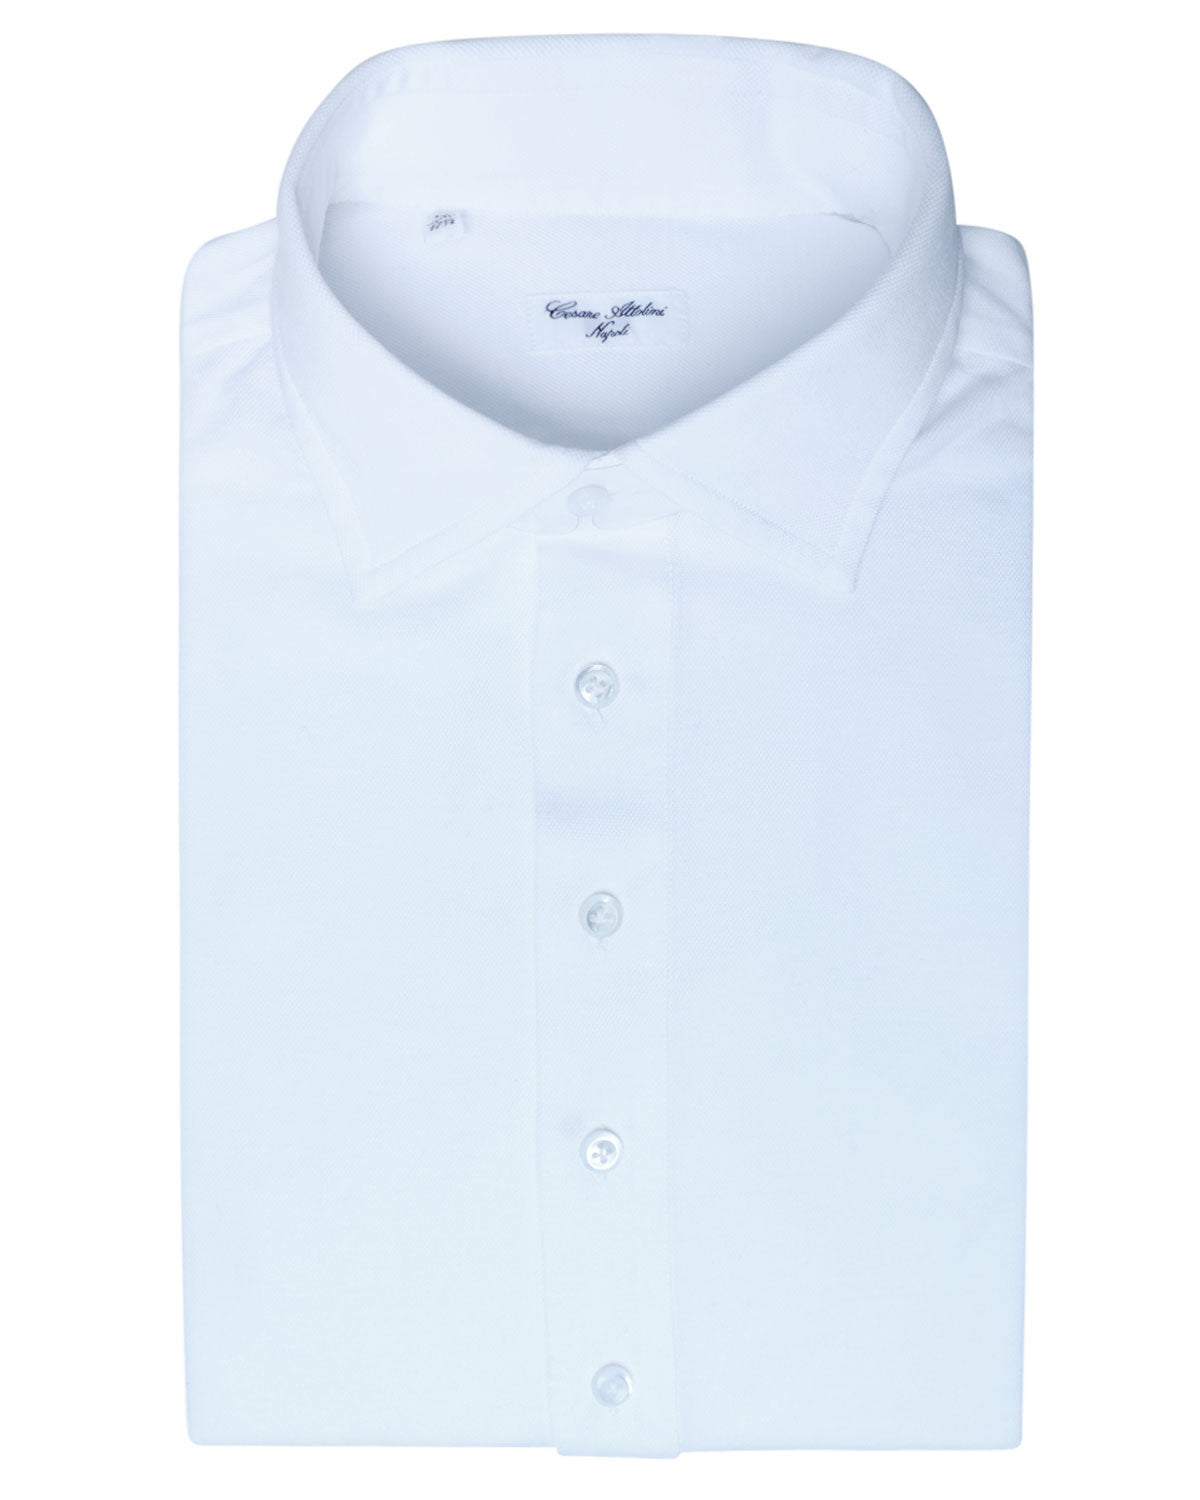 White Jersey Knit Dress Shirt